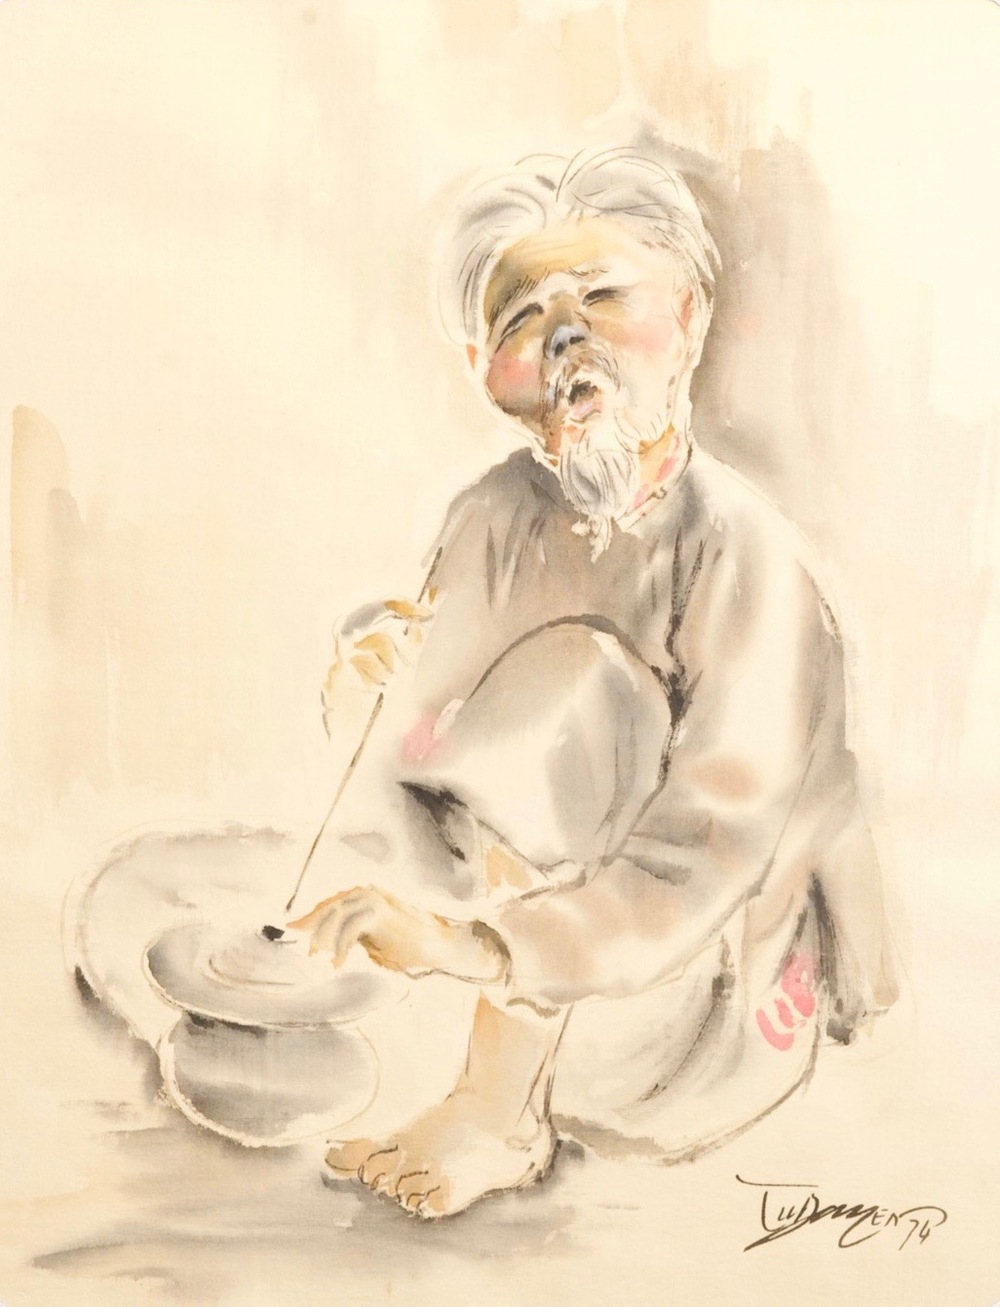 Tu Duyen (Vietnam, 1915-2012): aquarel op zijde, gedat. 1974